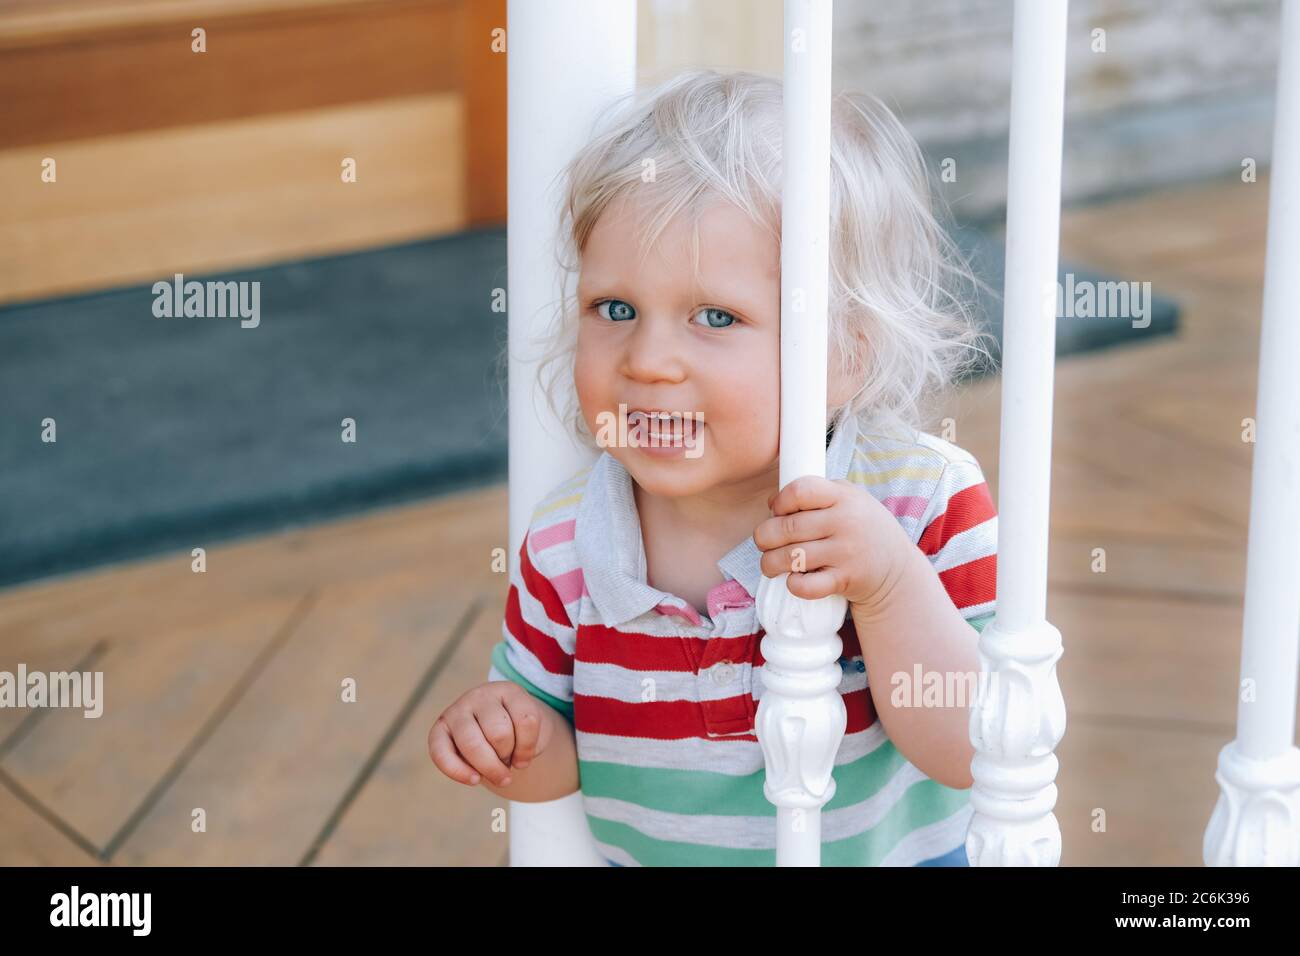 Portrait d'un joli petit garçon heureux avec des cheveux blonds et des yeux bleus, debout derrière les rails d'escalier blancs dans le café extérieur, se laquant comment marcher. Retour au concept normal. Banque D'Images